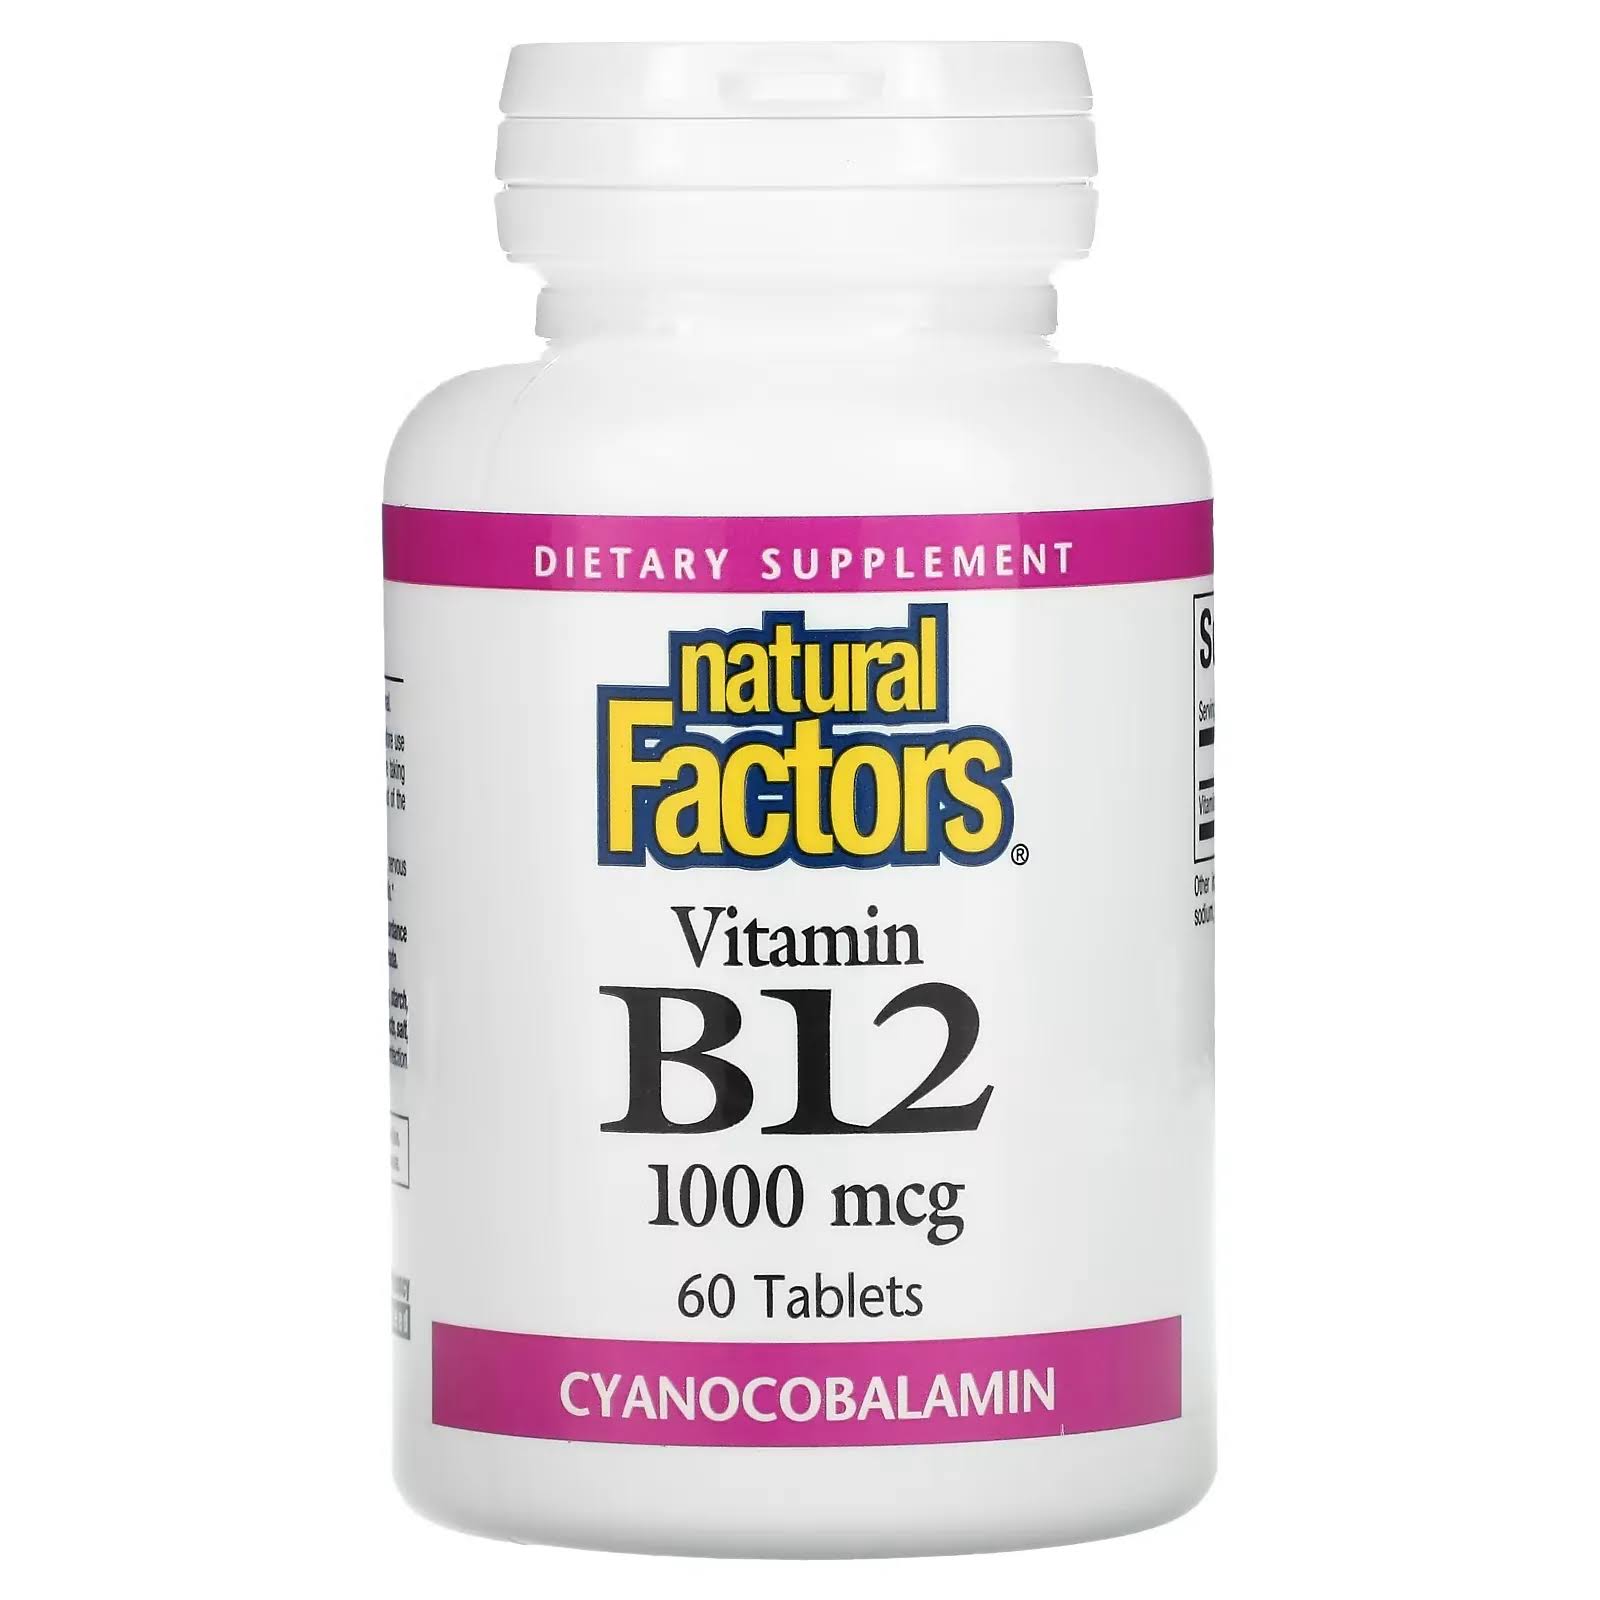 Natural Factors Vitamin B12 Supplement - 60 Tablets